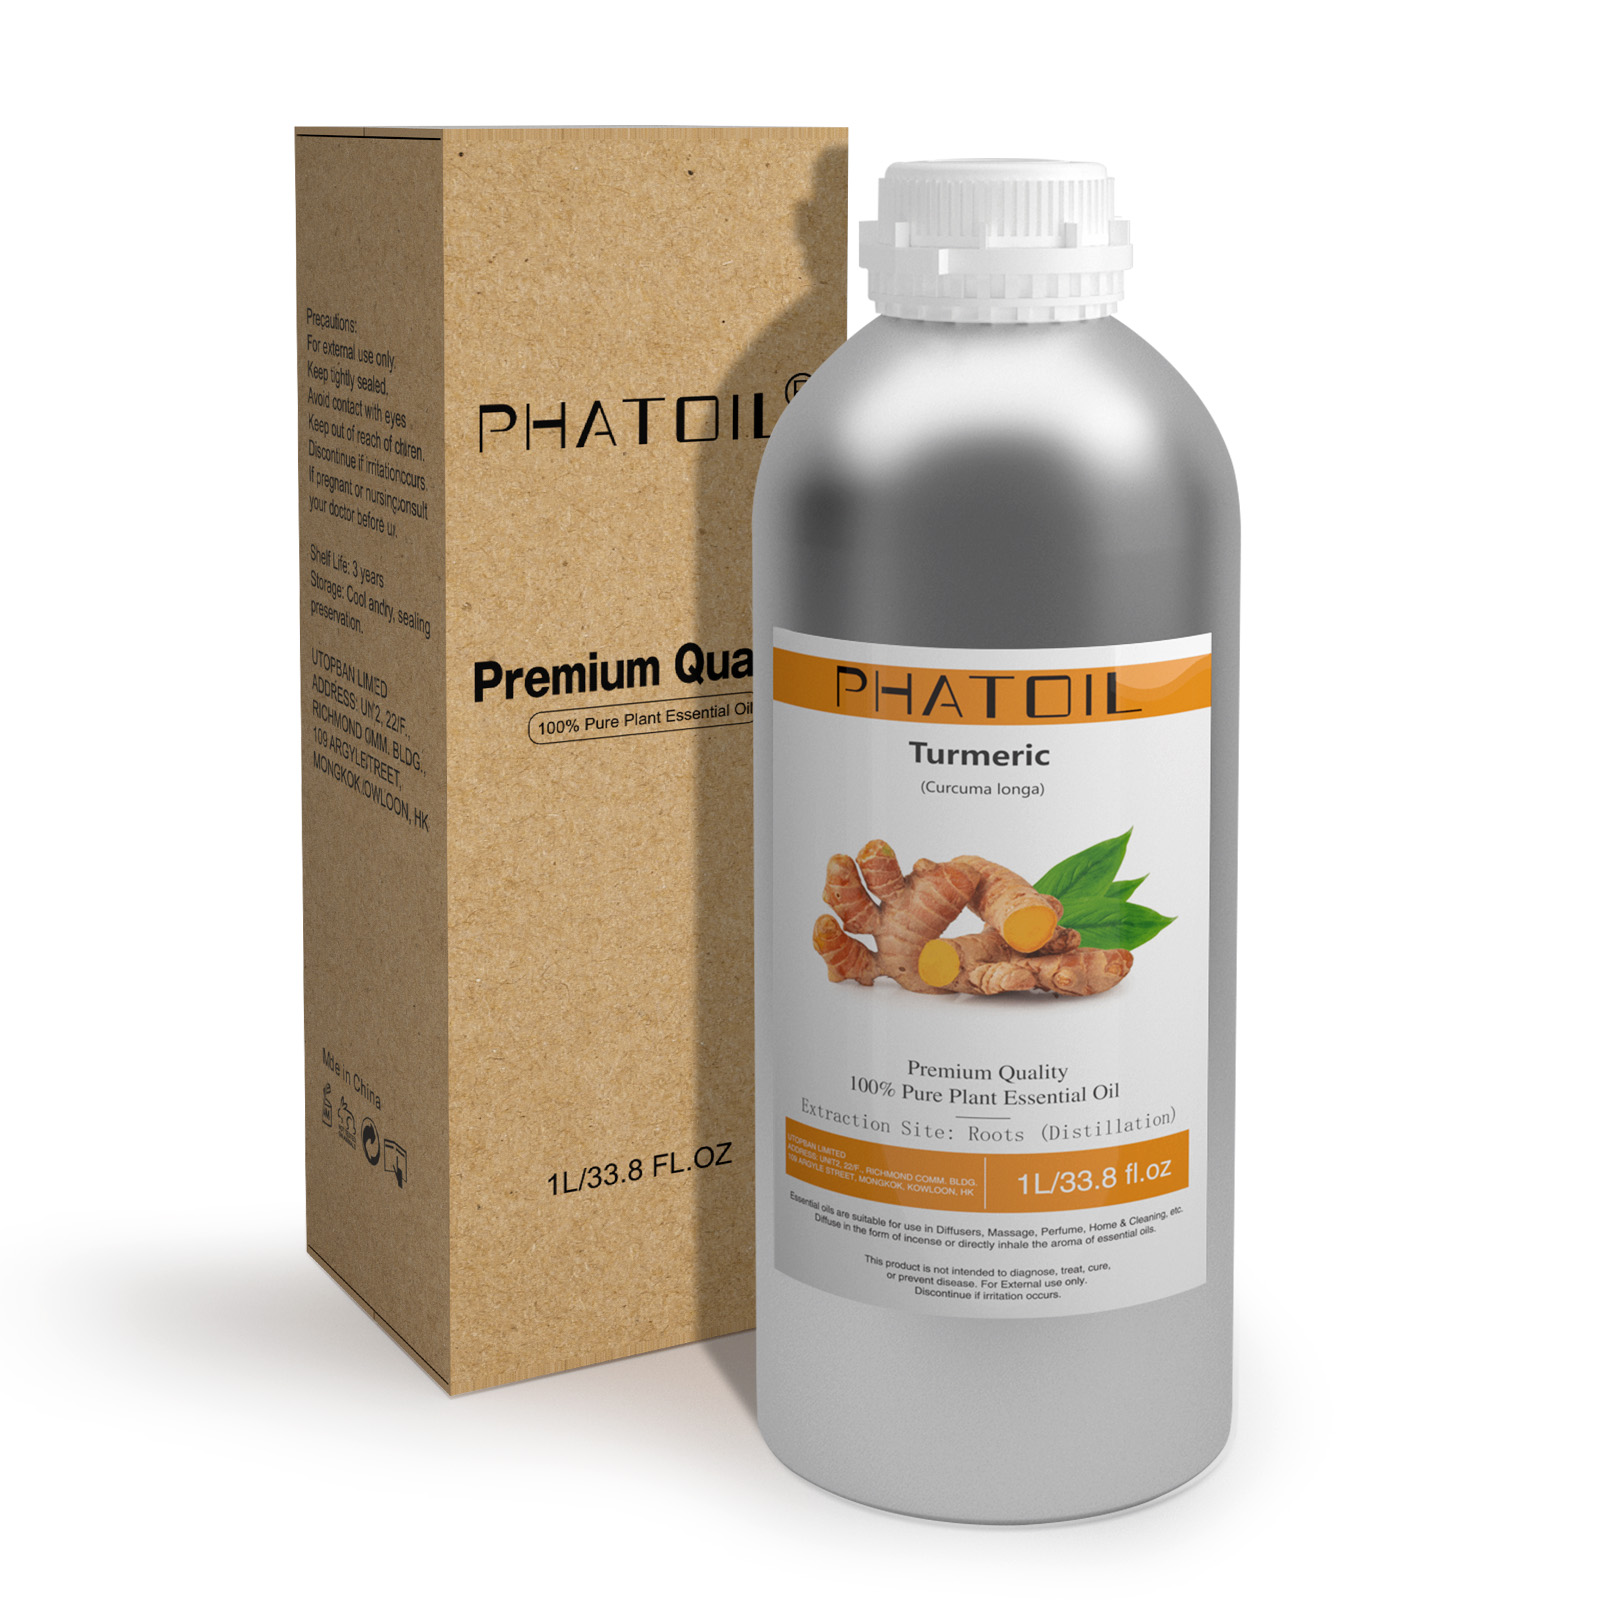 Phatoil 1L Turmeric Essential Oil With Aluminium Bottle